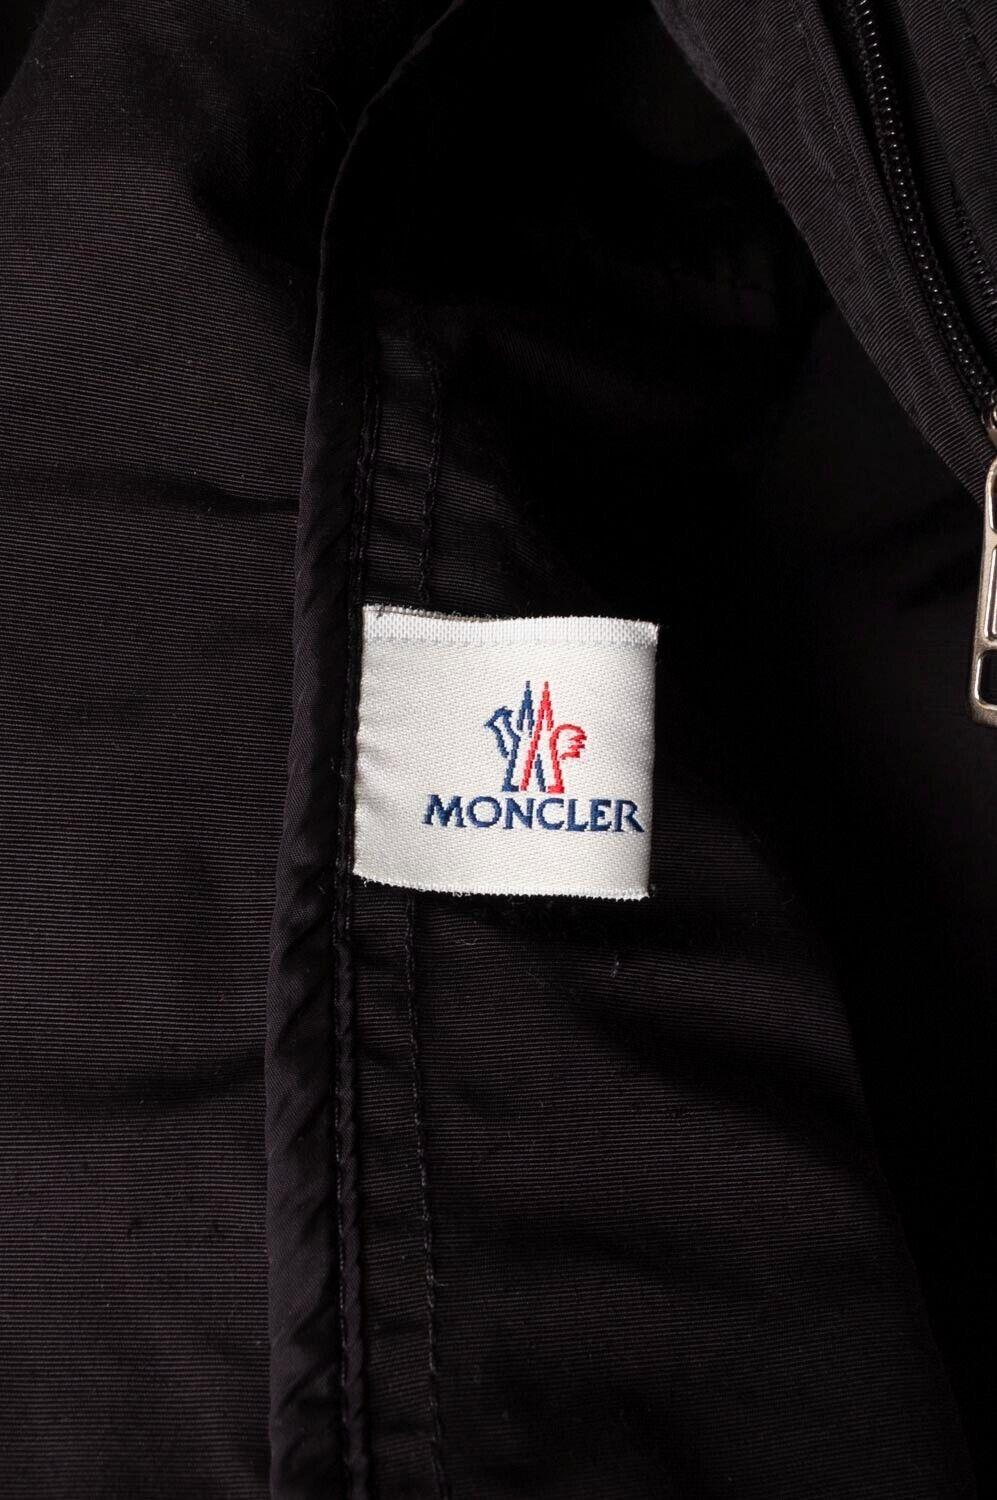 Moncler Leopold Nylon Men Packable Jacket Blazer Size 3 (M/L) S347 2